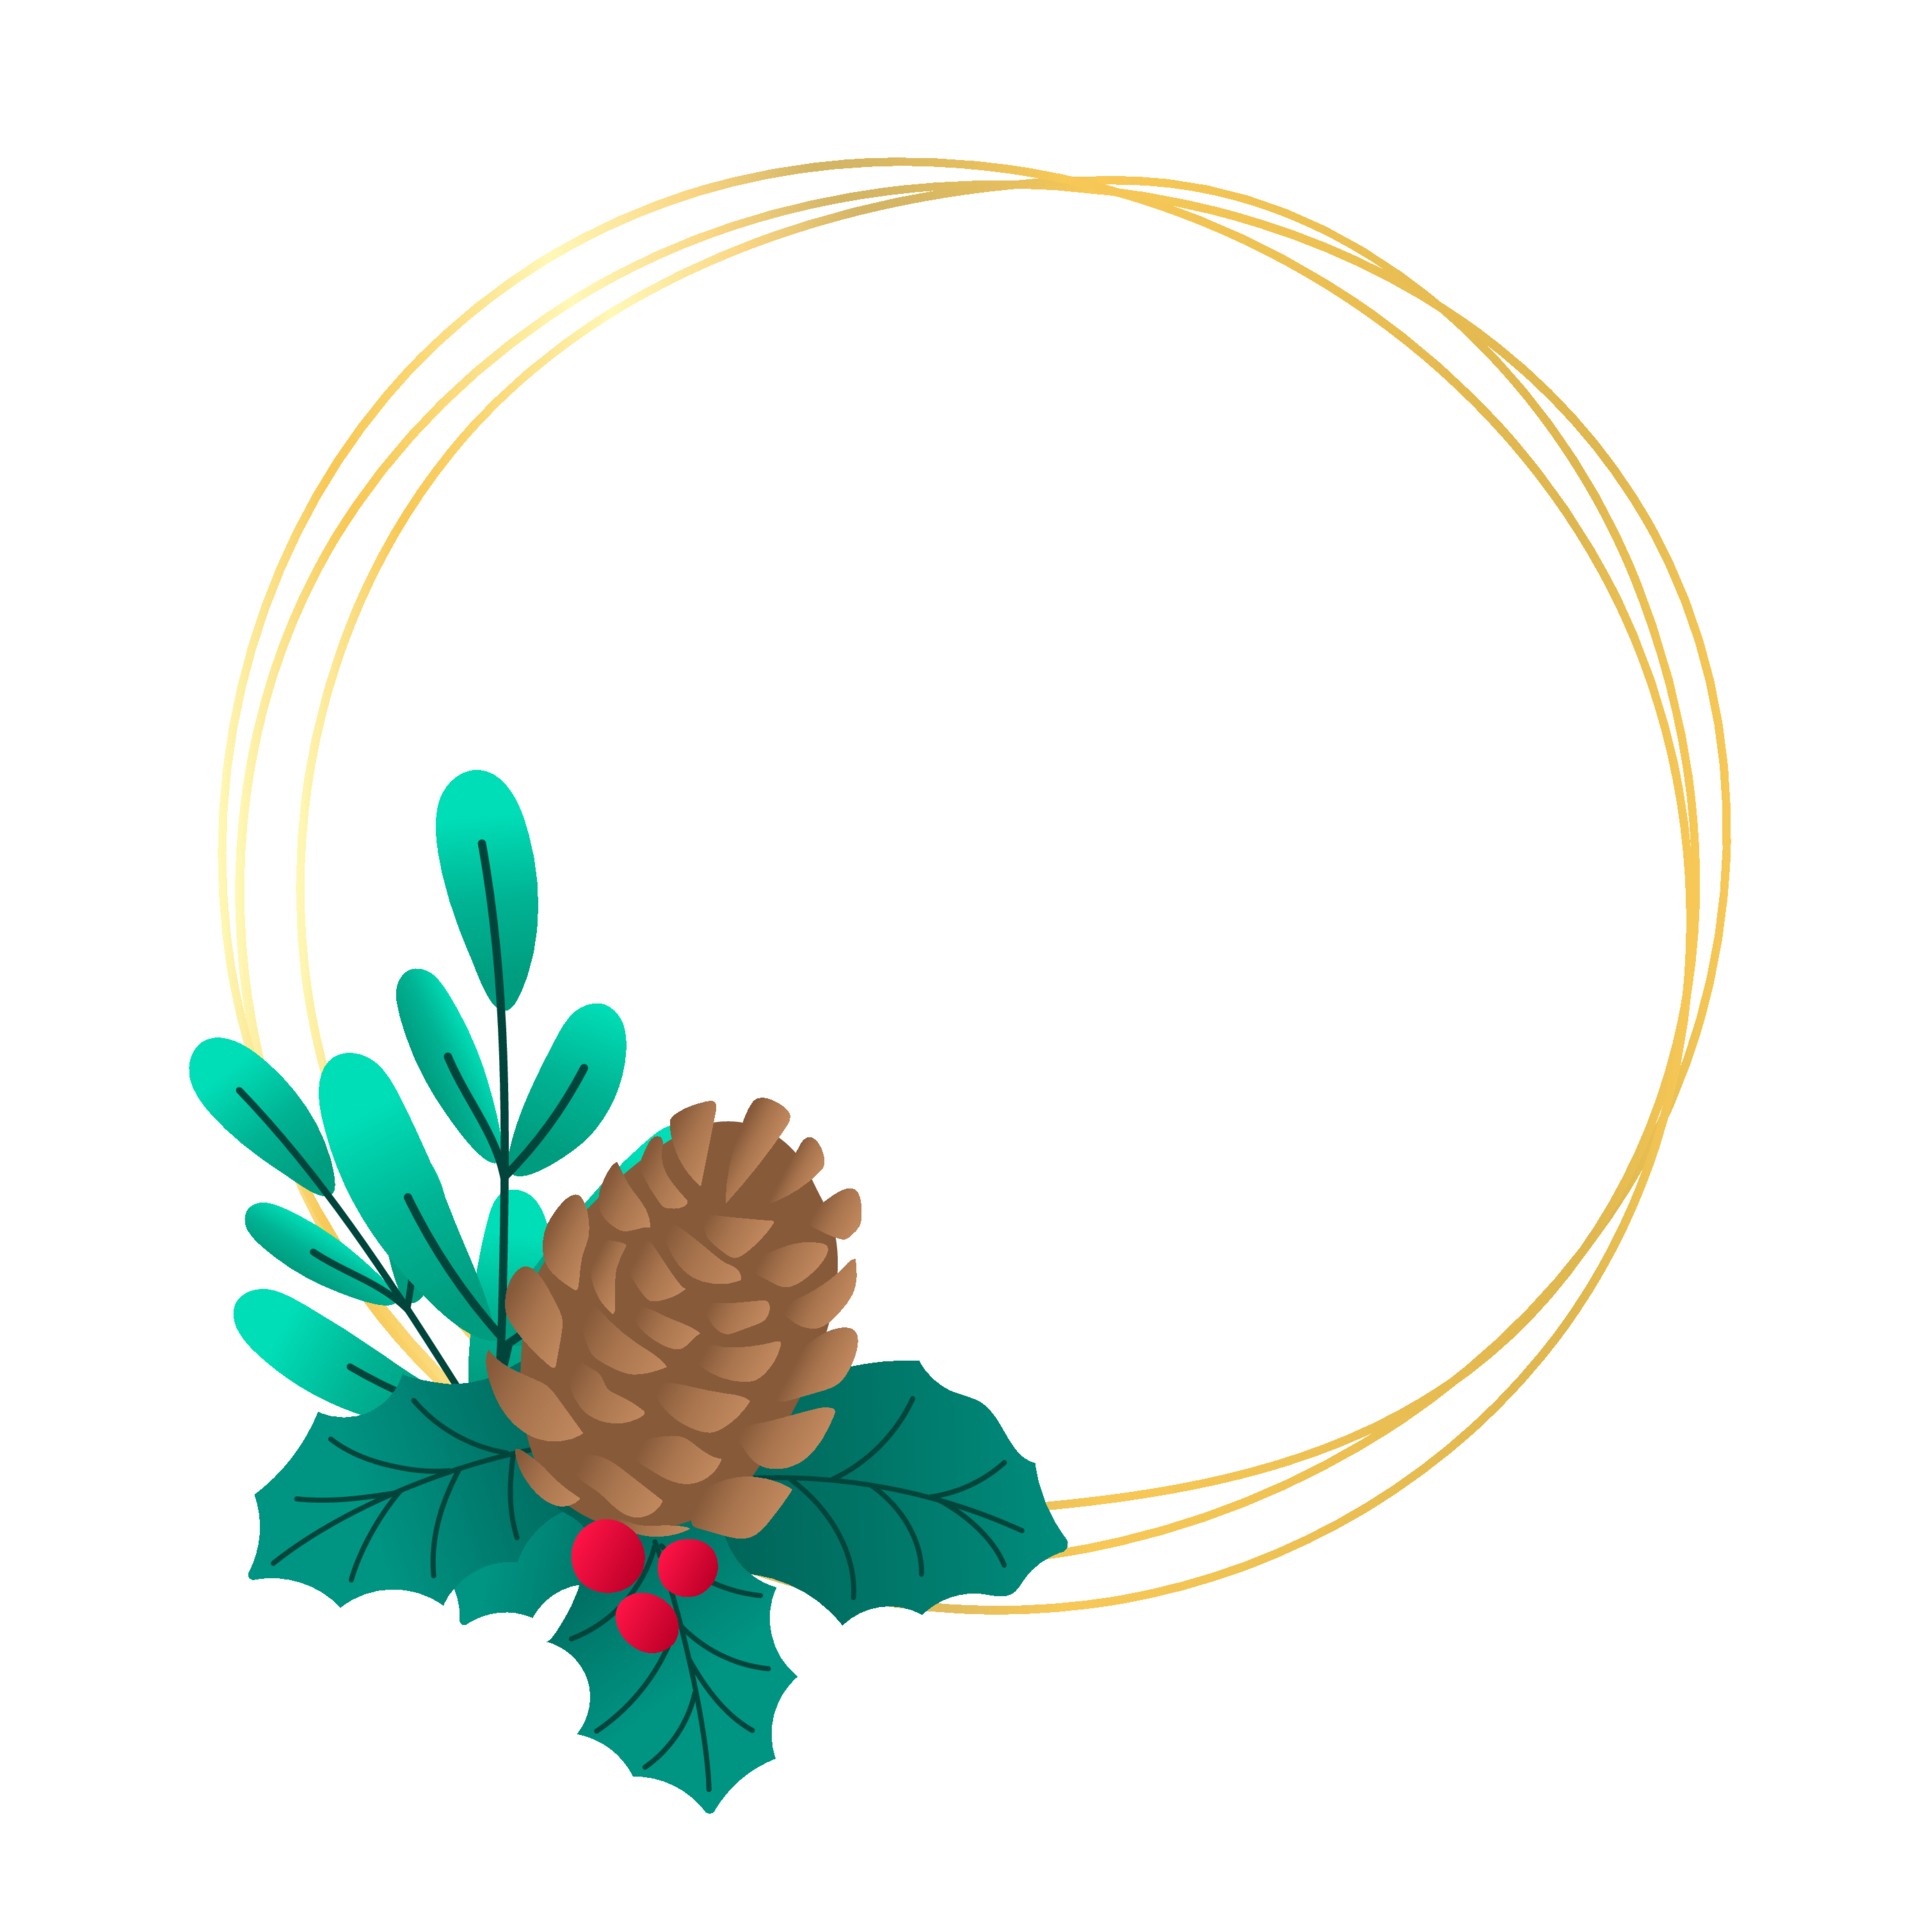 moldura redonda de Natal dourada minimalista com cone de abeto, folhas  3430097 Vetor no Vecteezy